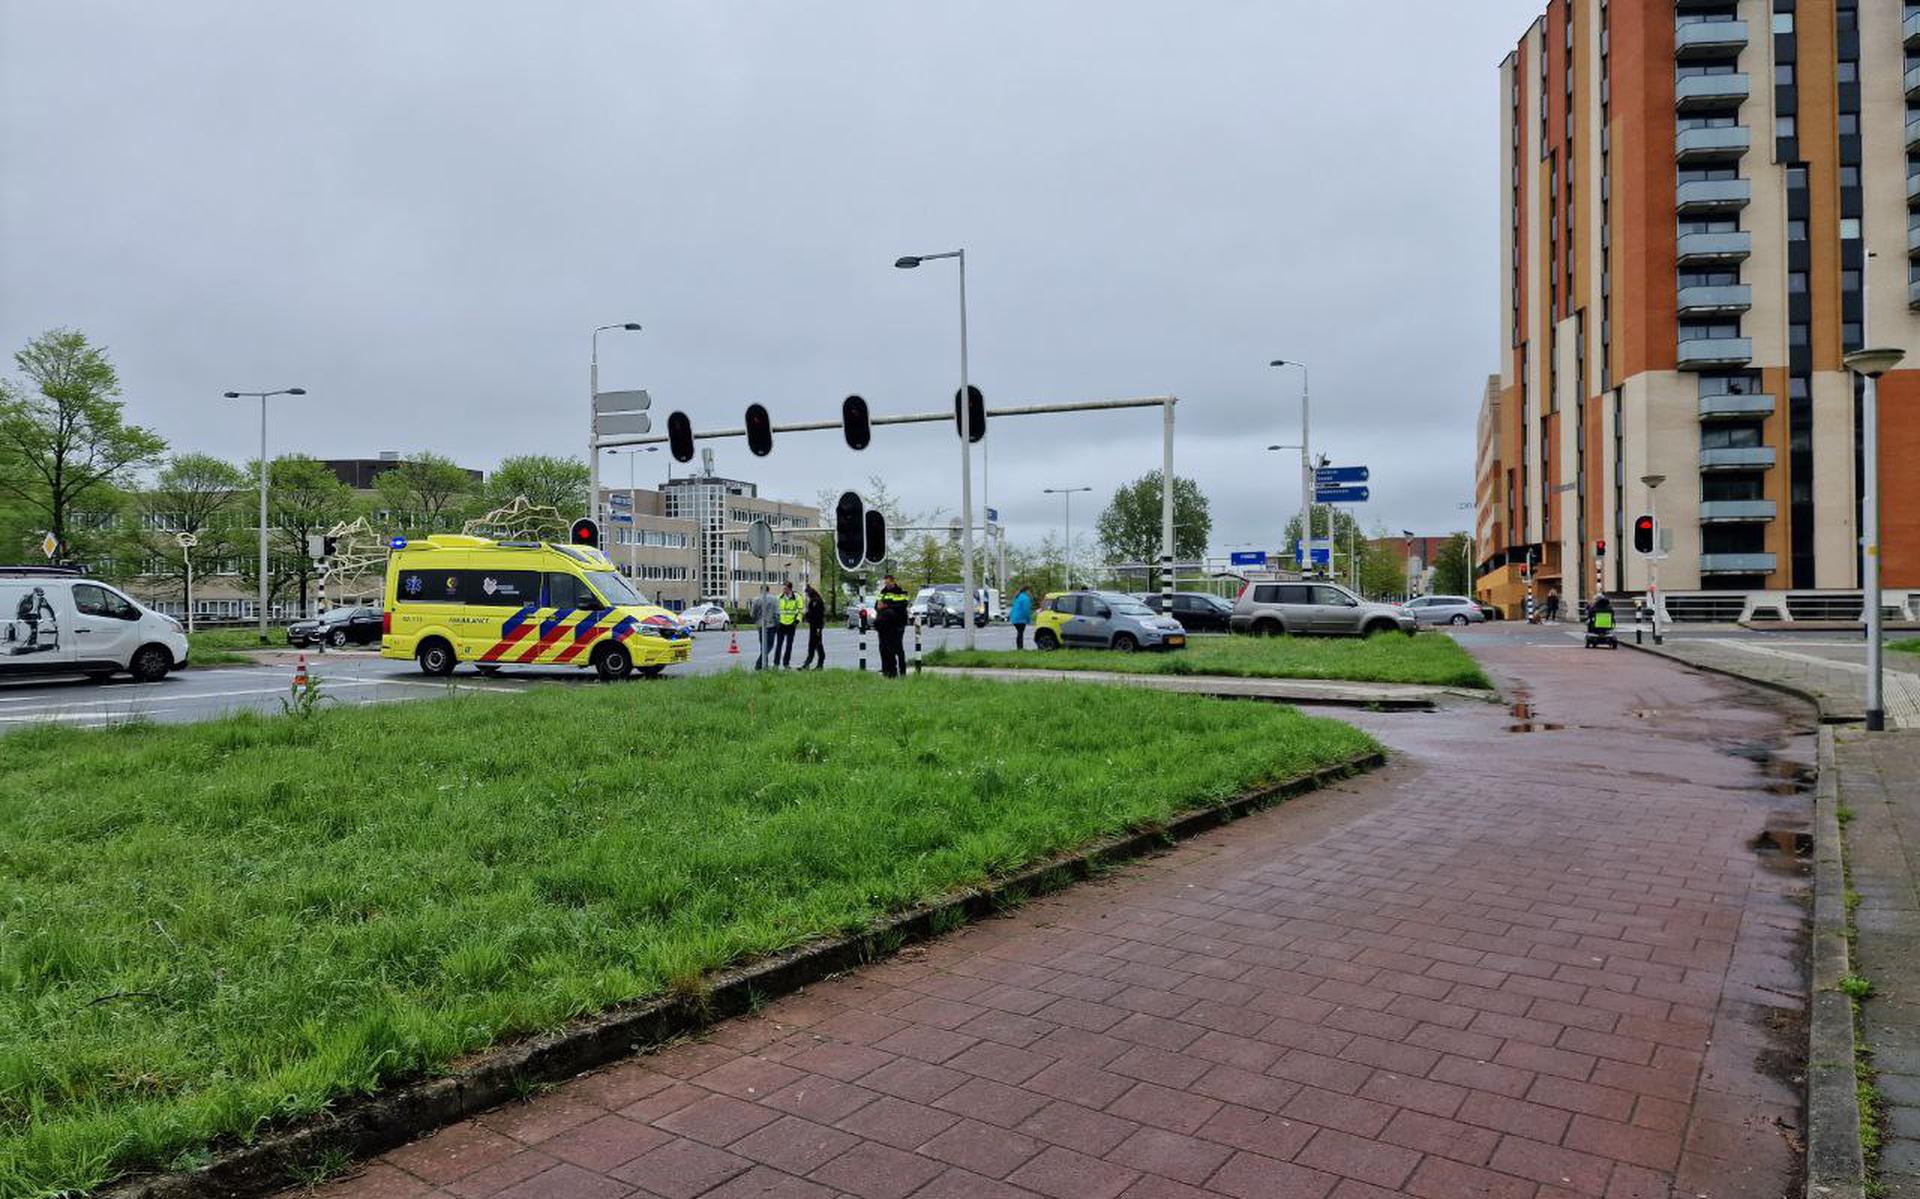 Voetganger gewond na aanrijding op kruising Julianalaan en Overijsselselaan in Leeuwarden.